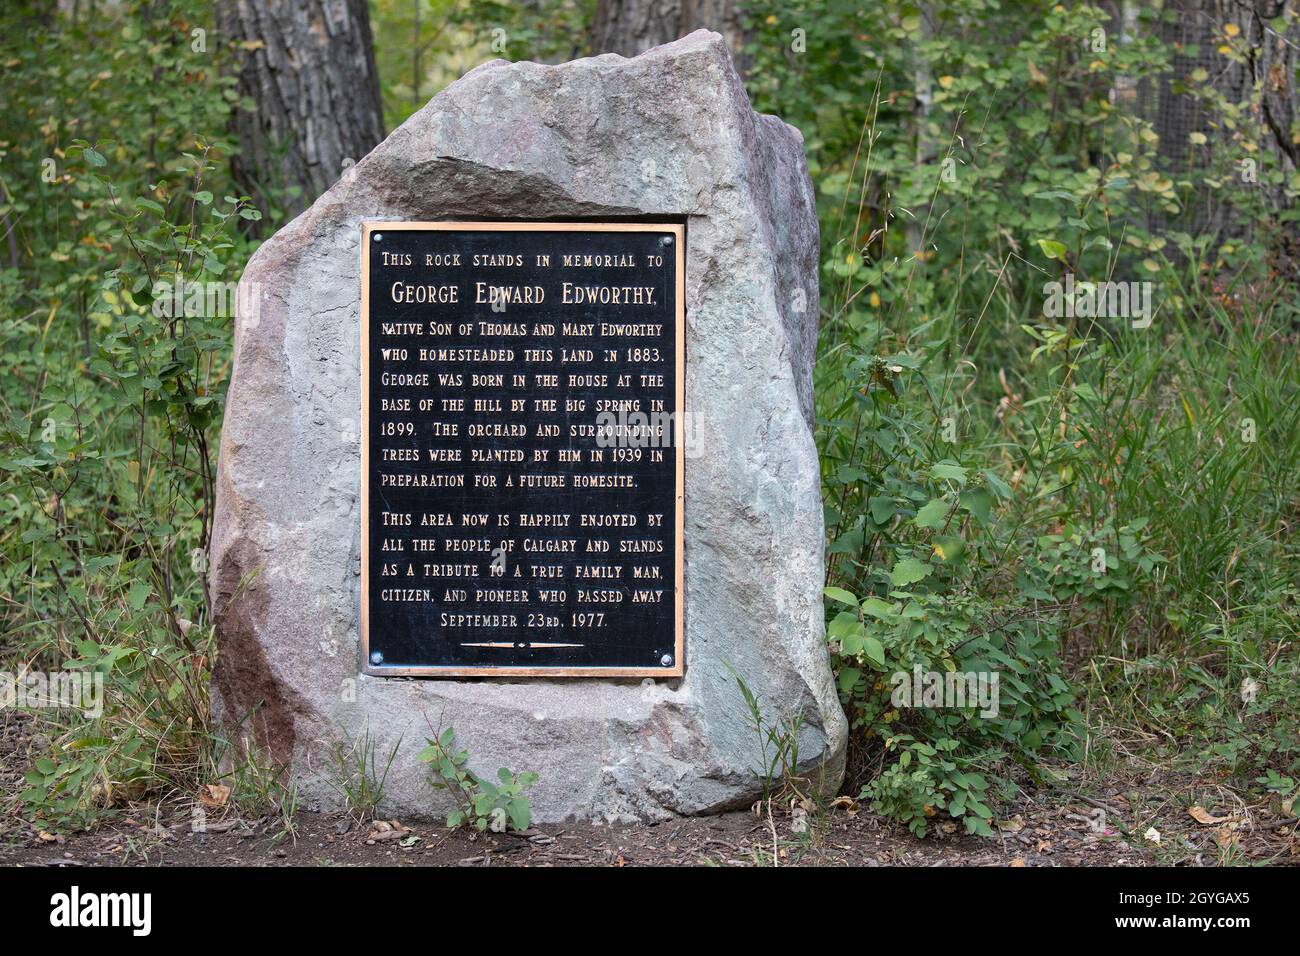 Plaque commémorative sur le rocher en hommage à George Edward Edworthy, un pionnier de l'Ouest canadien qui a cultivé les terres maintenant protégées comme Edworthy Park à Calgary Banque D'Images